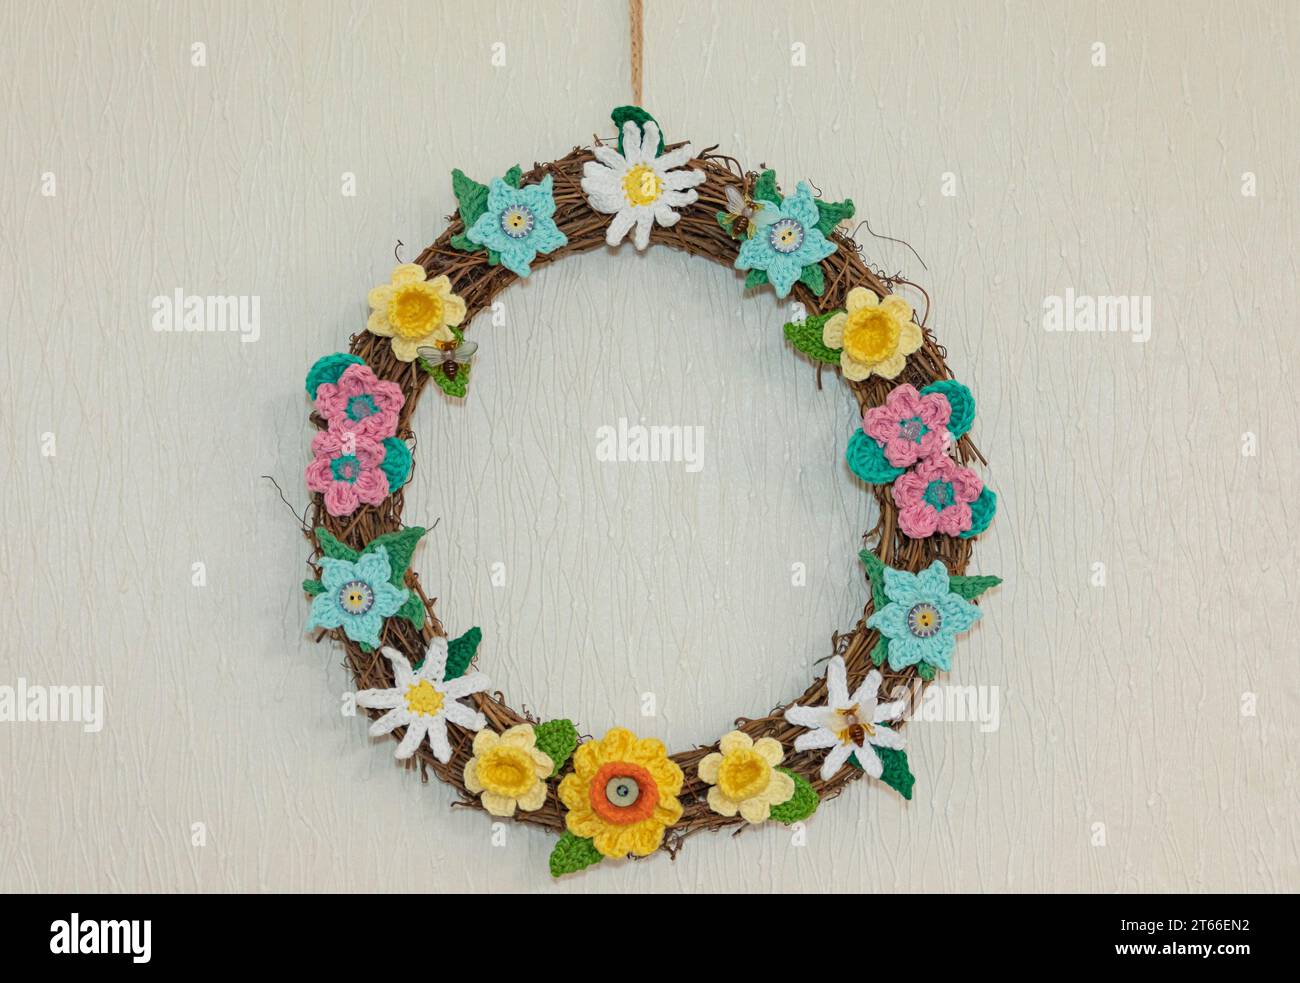 Anillo hecho de crochet de flores de primavera y verano con abejas y rafia Foto de stock